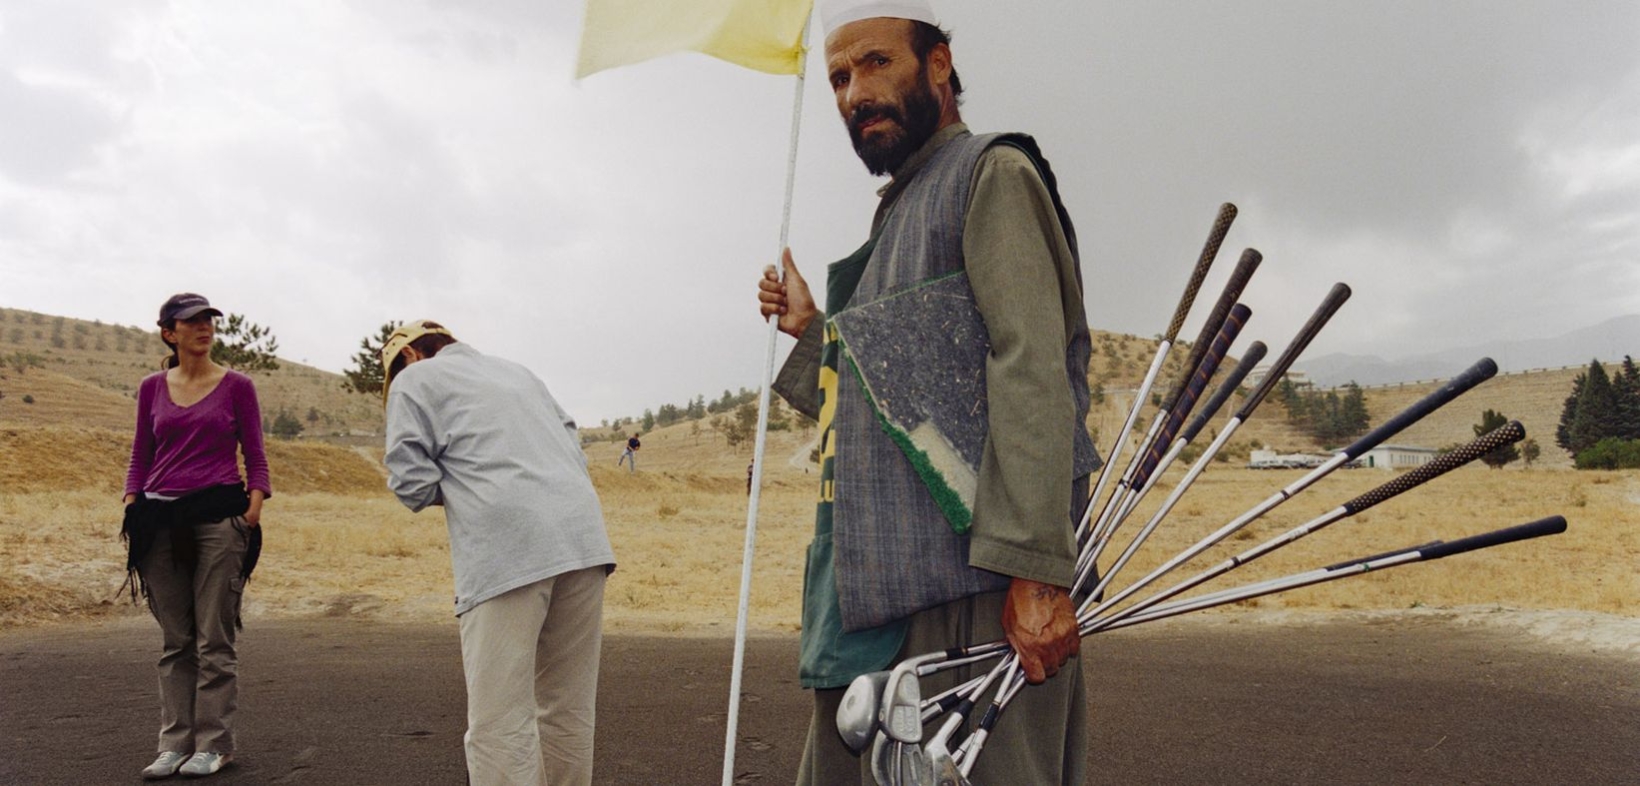 Relativ ausgetrockneter Golfplatz mit zwei weißen Golfspieler:innen im Hintergrund, im Vordergrund ein afghanischer Mann als Assistent mit vielen Golfschlägern und Fahne für das Golfloch